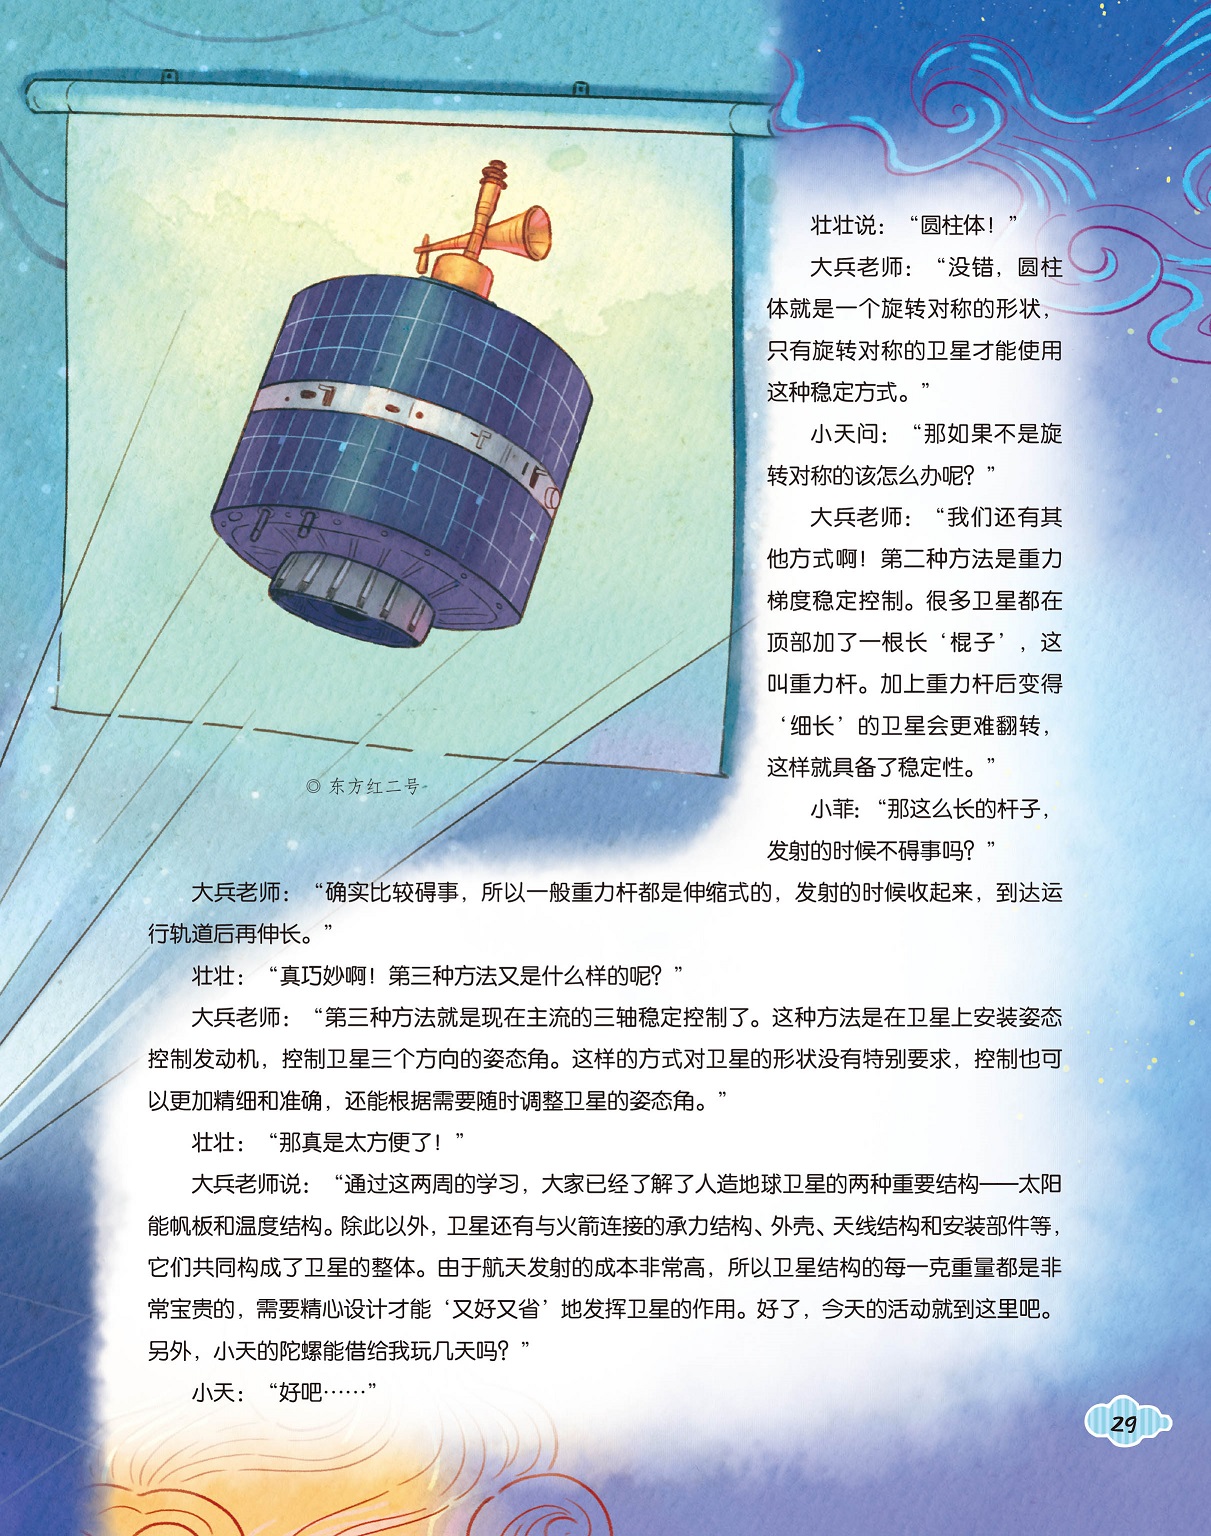 东方红二号卫星,太阳能帆板和温度结构